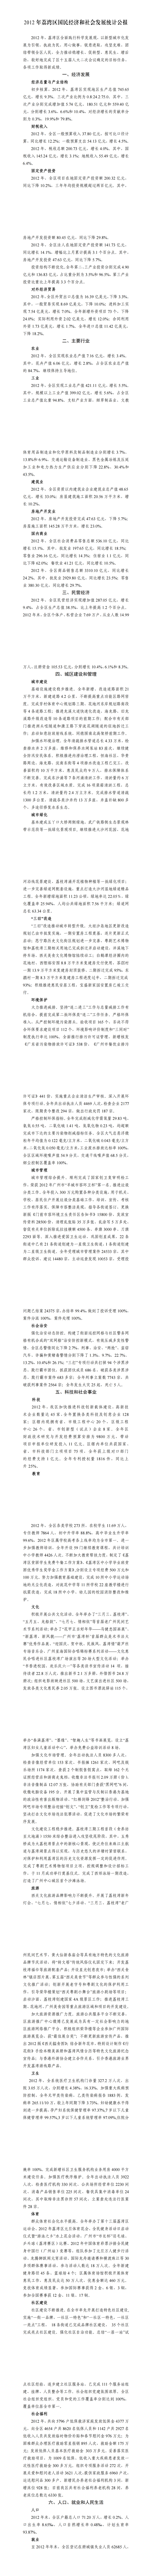 2012年荔湾区国民经济和社会发展统计公报_00.png